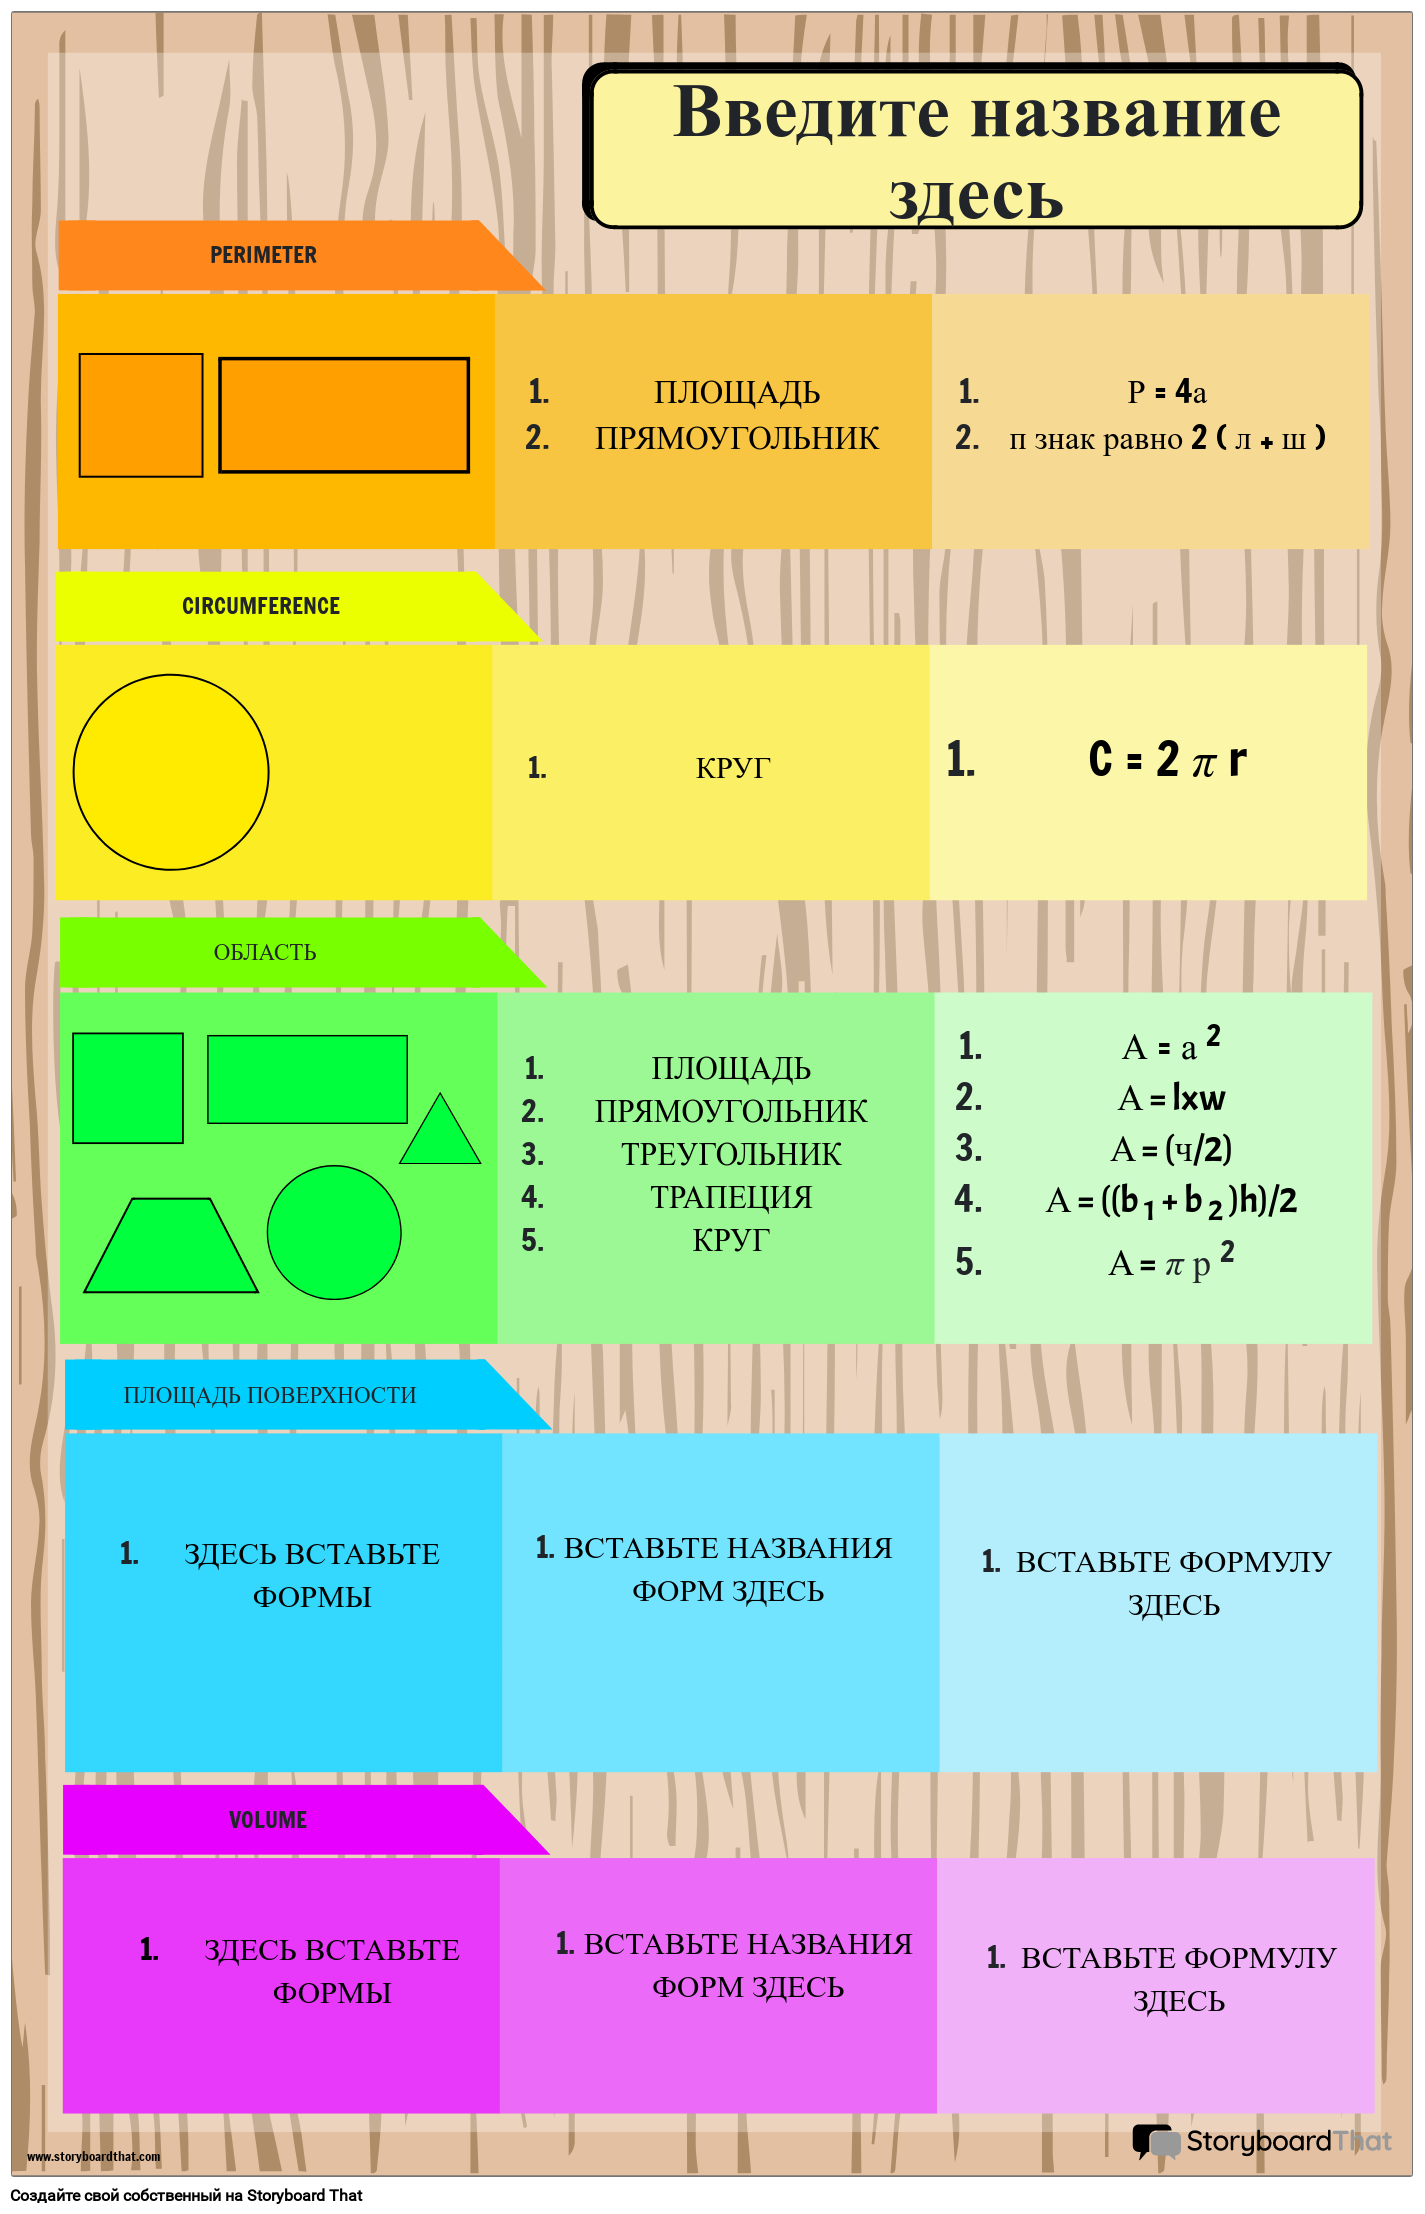 Плакат с базовой математической формулой с фигурами и цветами радуги